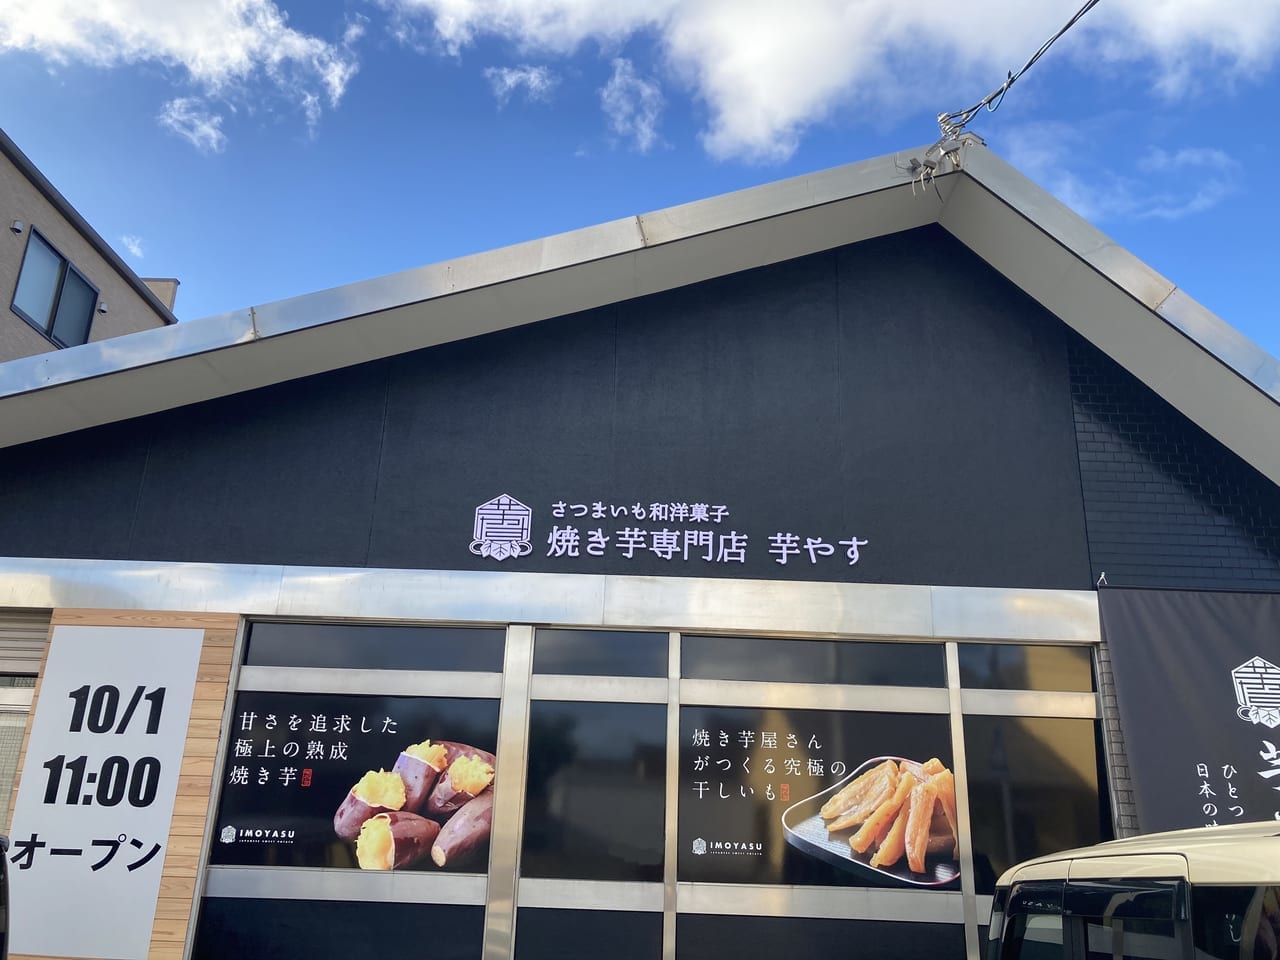 松阪市本町にオープンする芋やす店舗外観